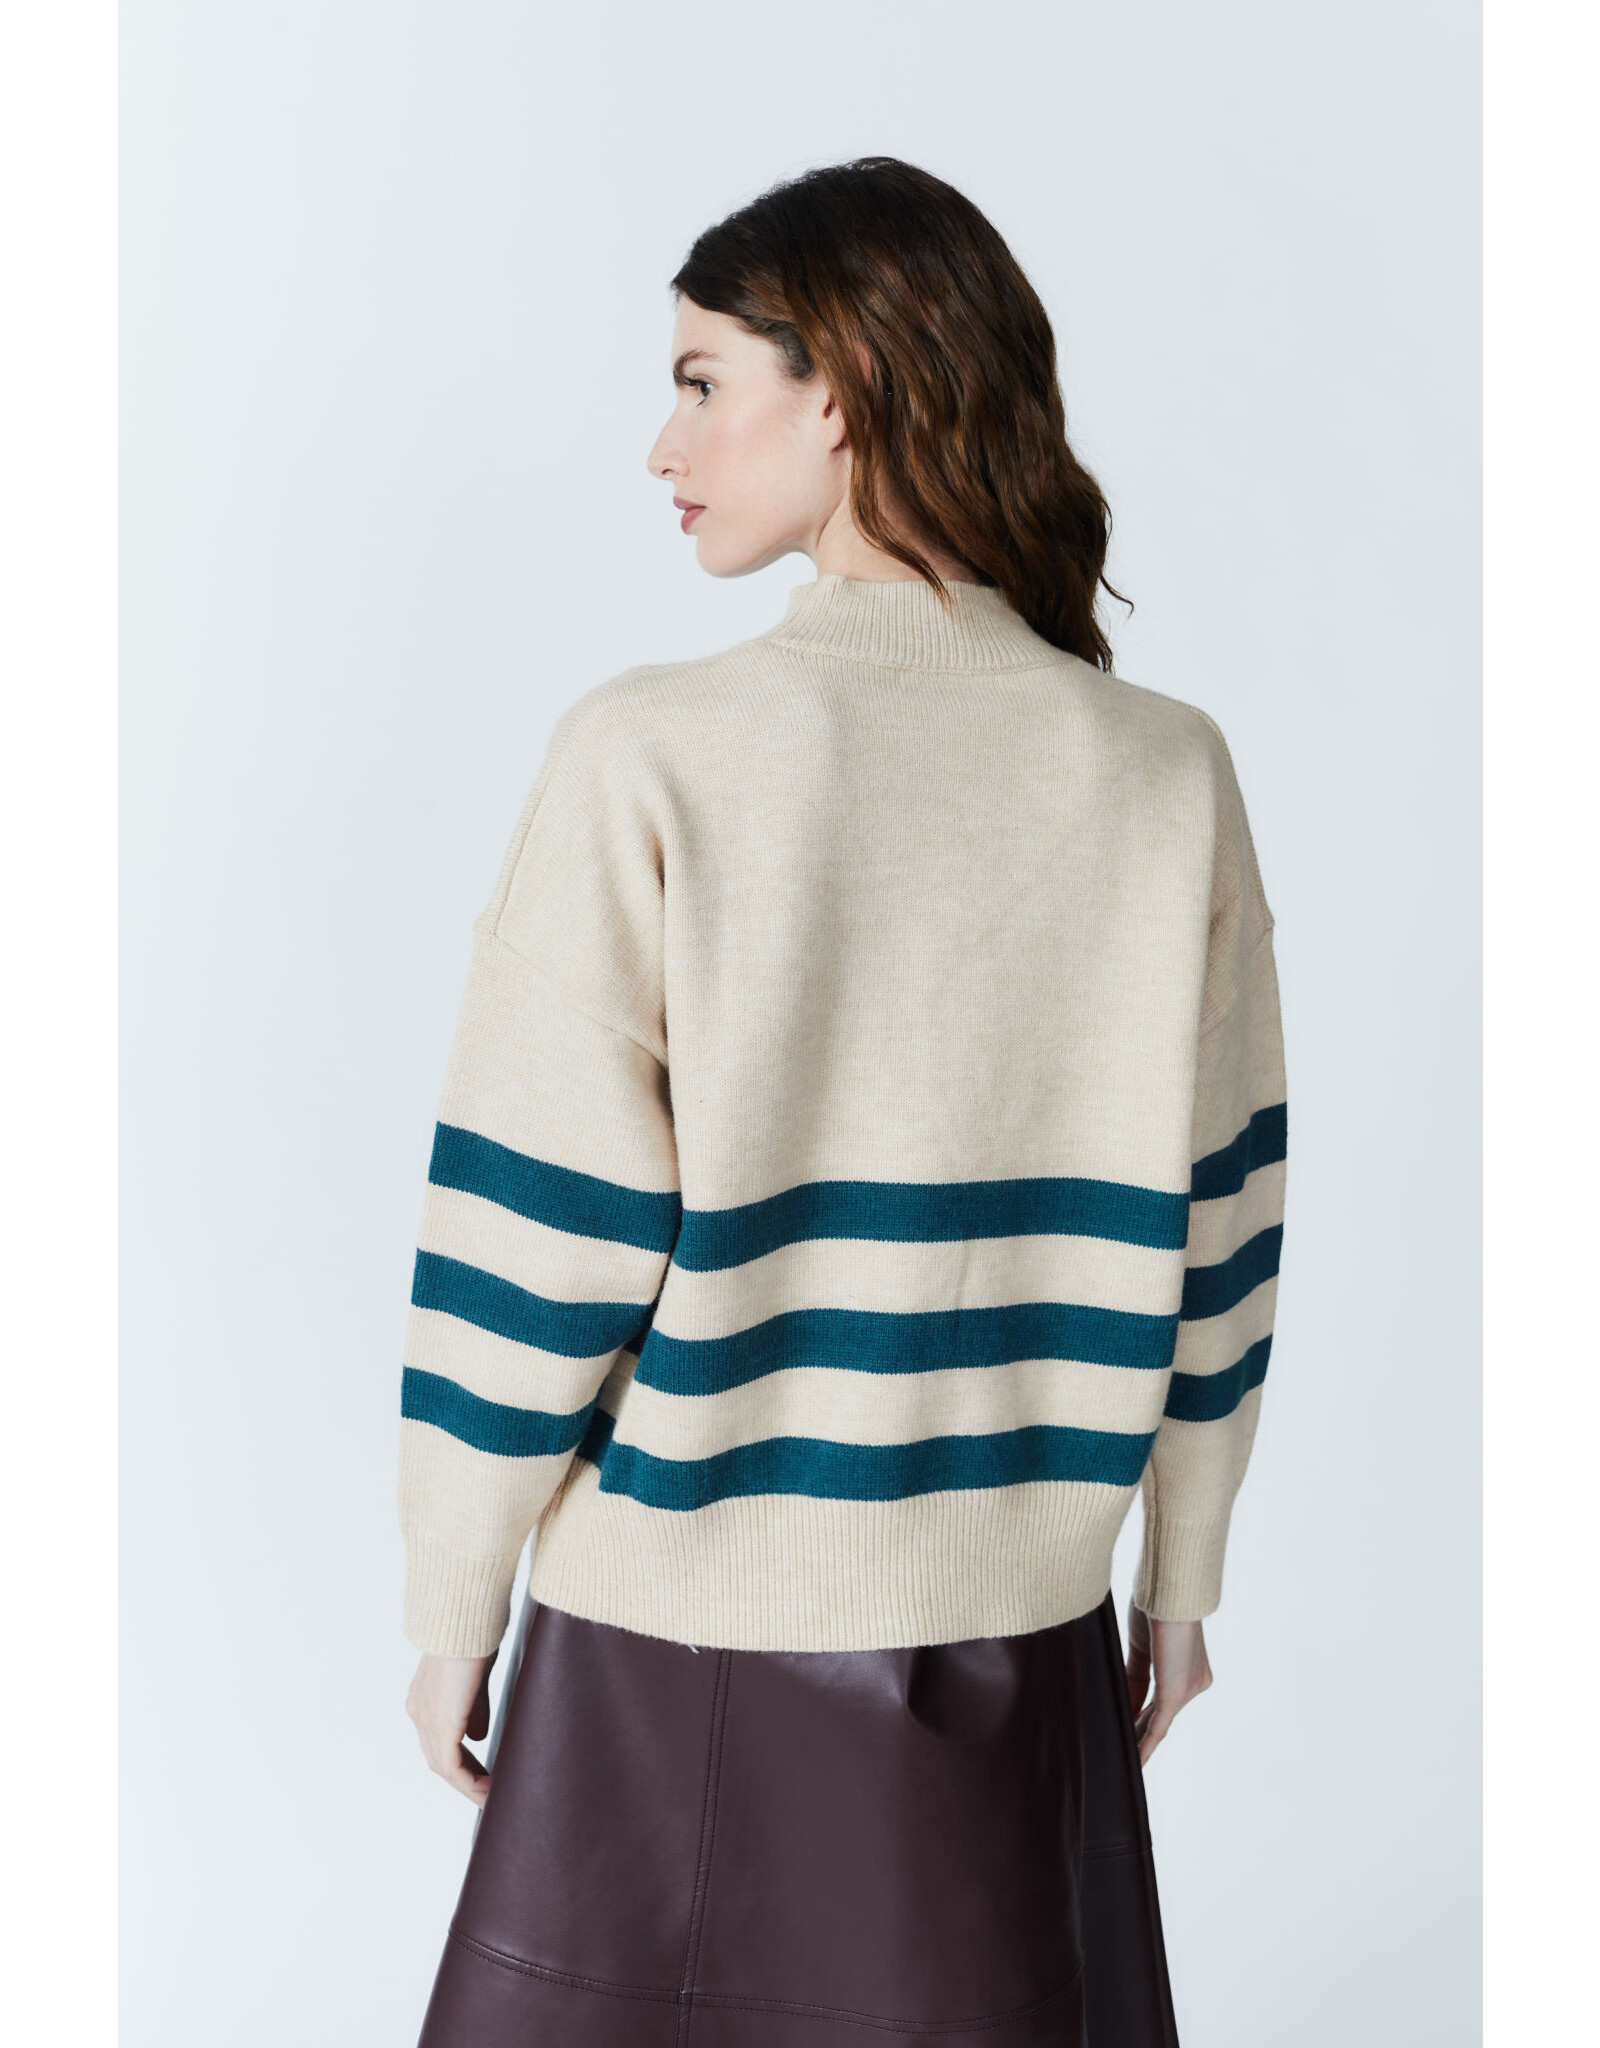 Deluc Deluc Atoms Striped Sweater